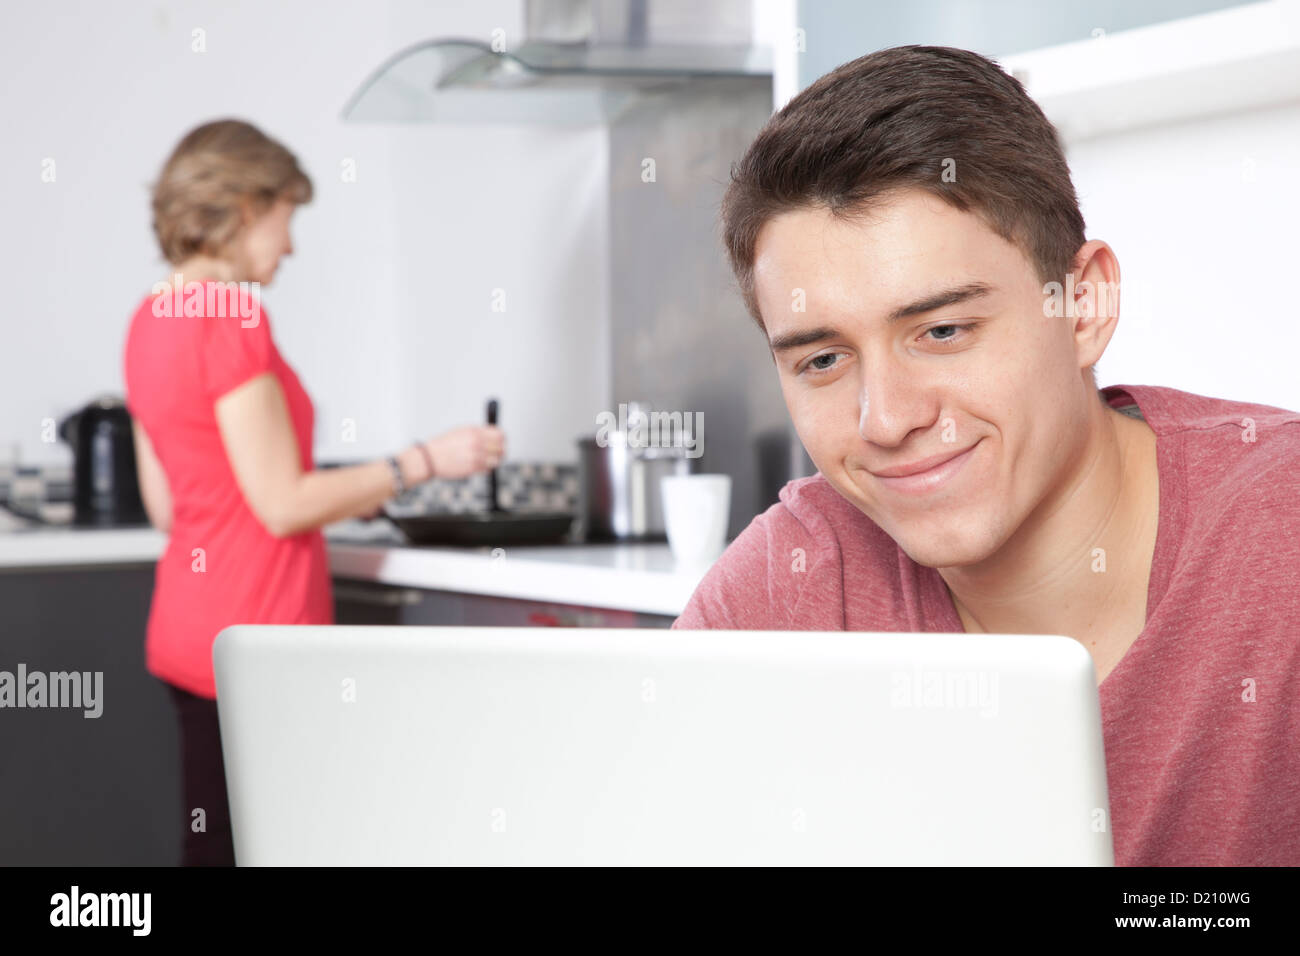 Lächelnd jungen Mann mit einem Laptop, ist eine Frau im Hintergrund kochen. Stockfoto